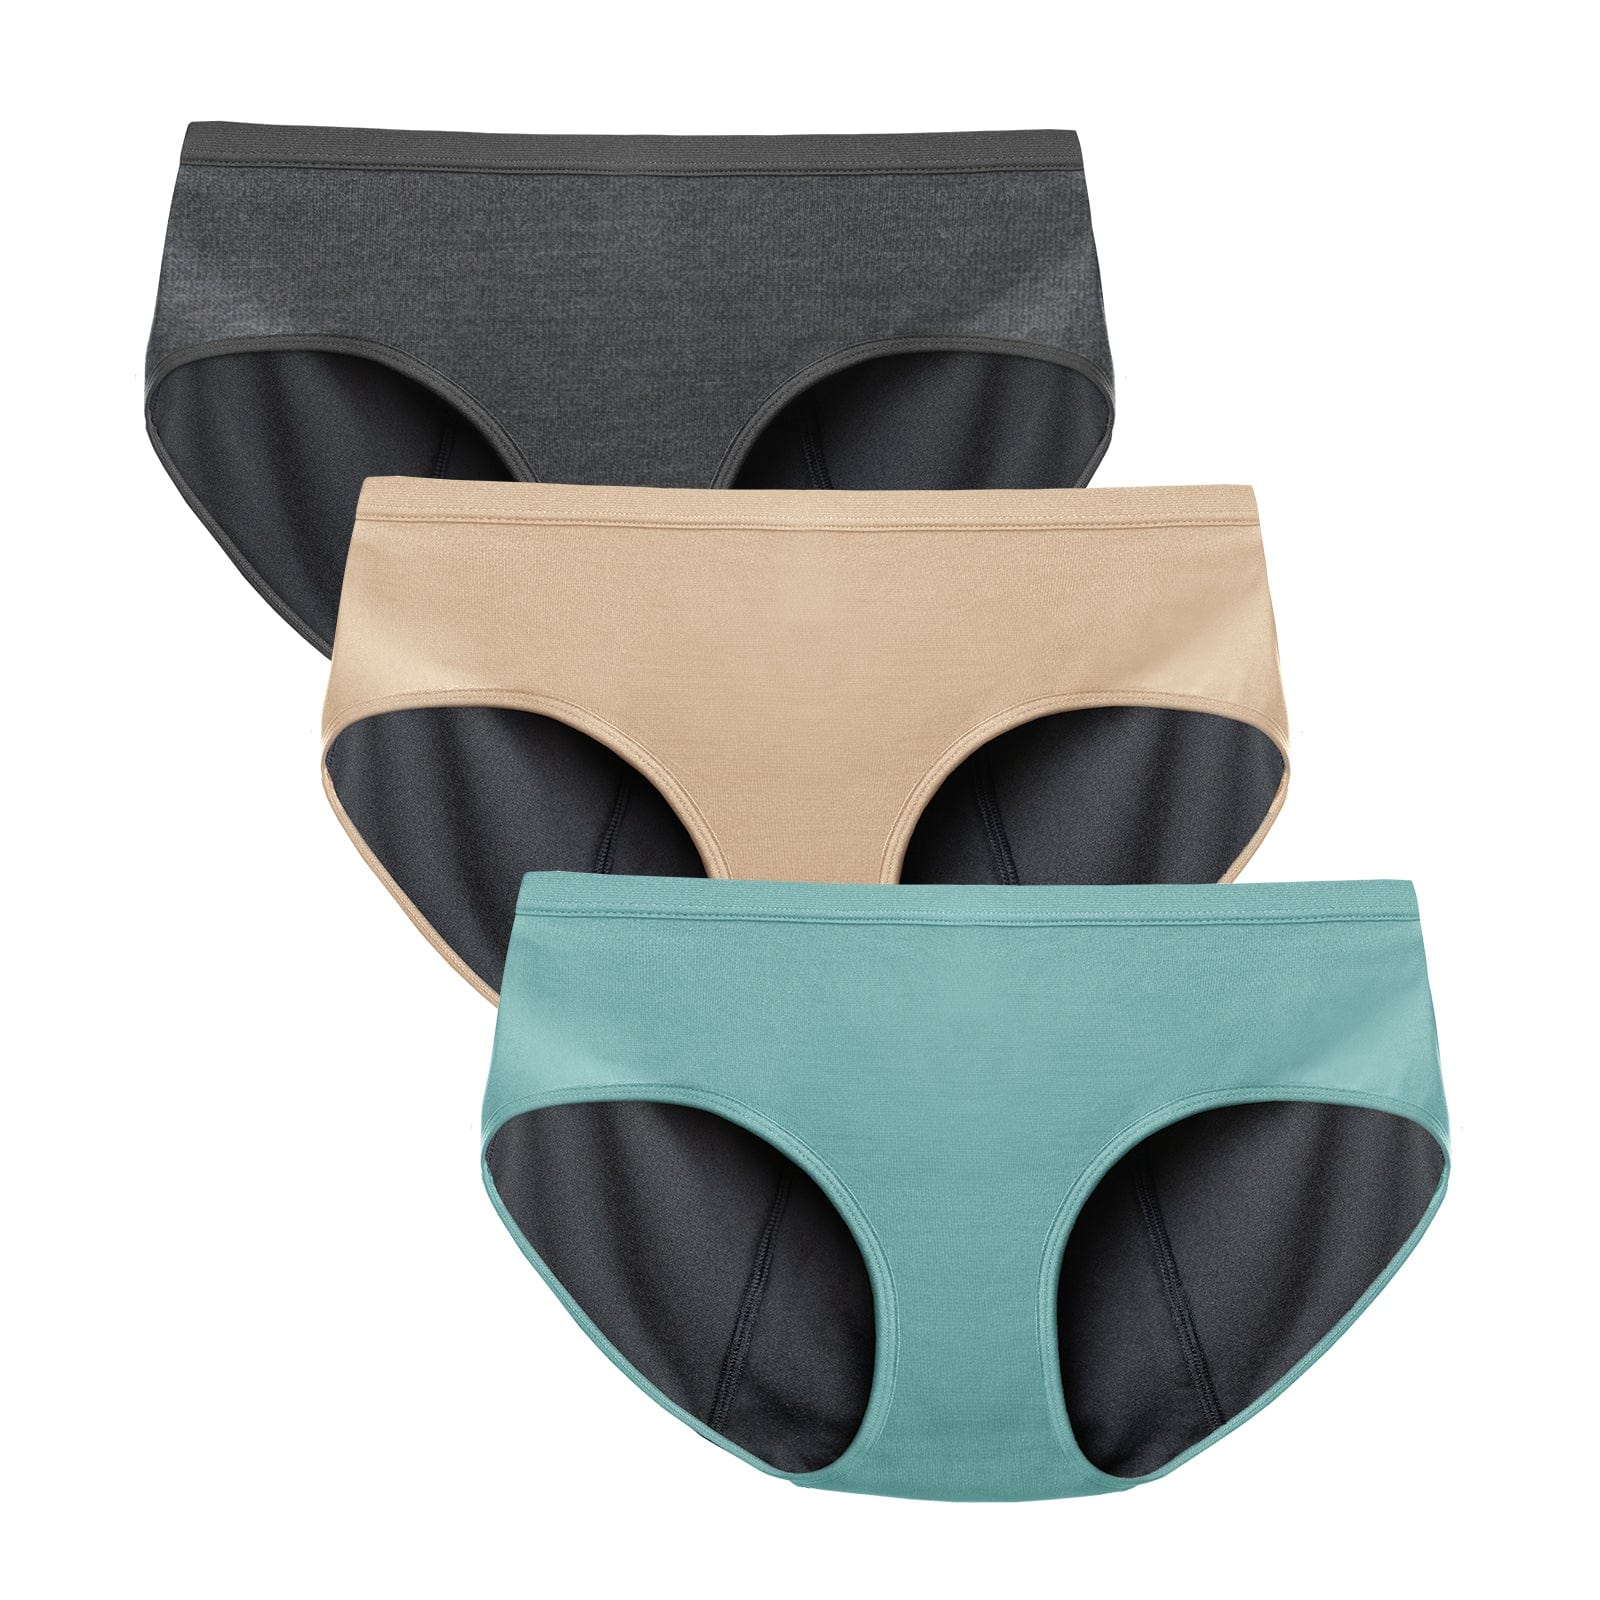  TIICHOO Leakproof Underwear For Women Hipster